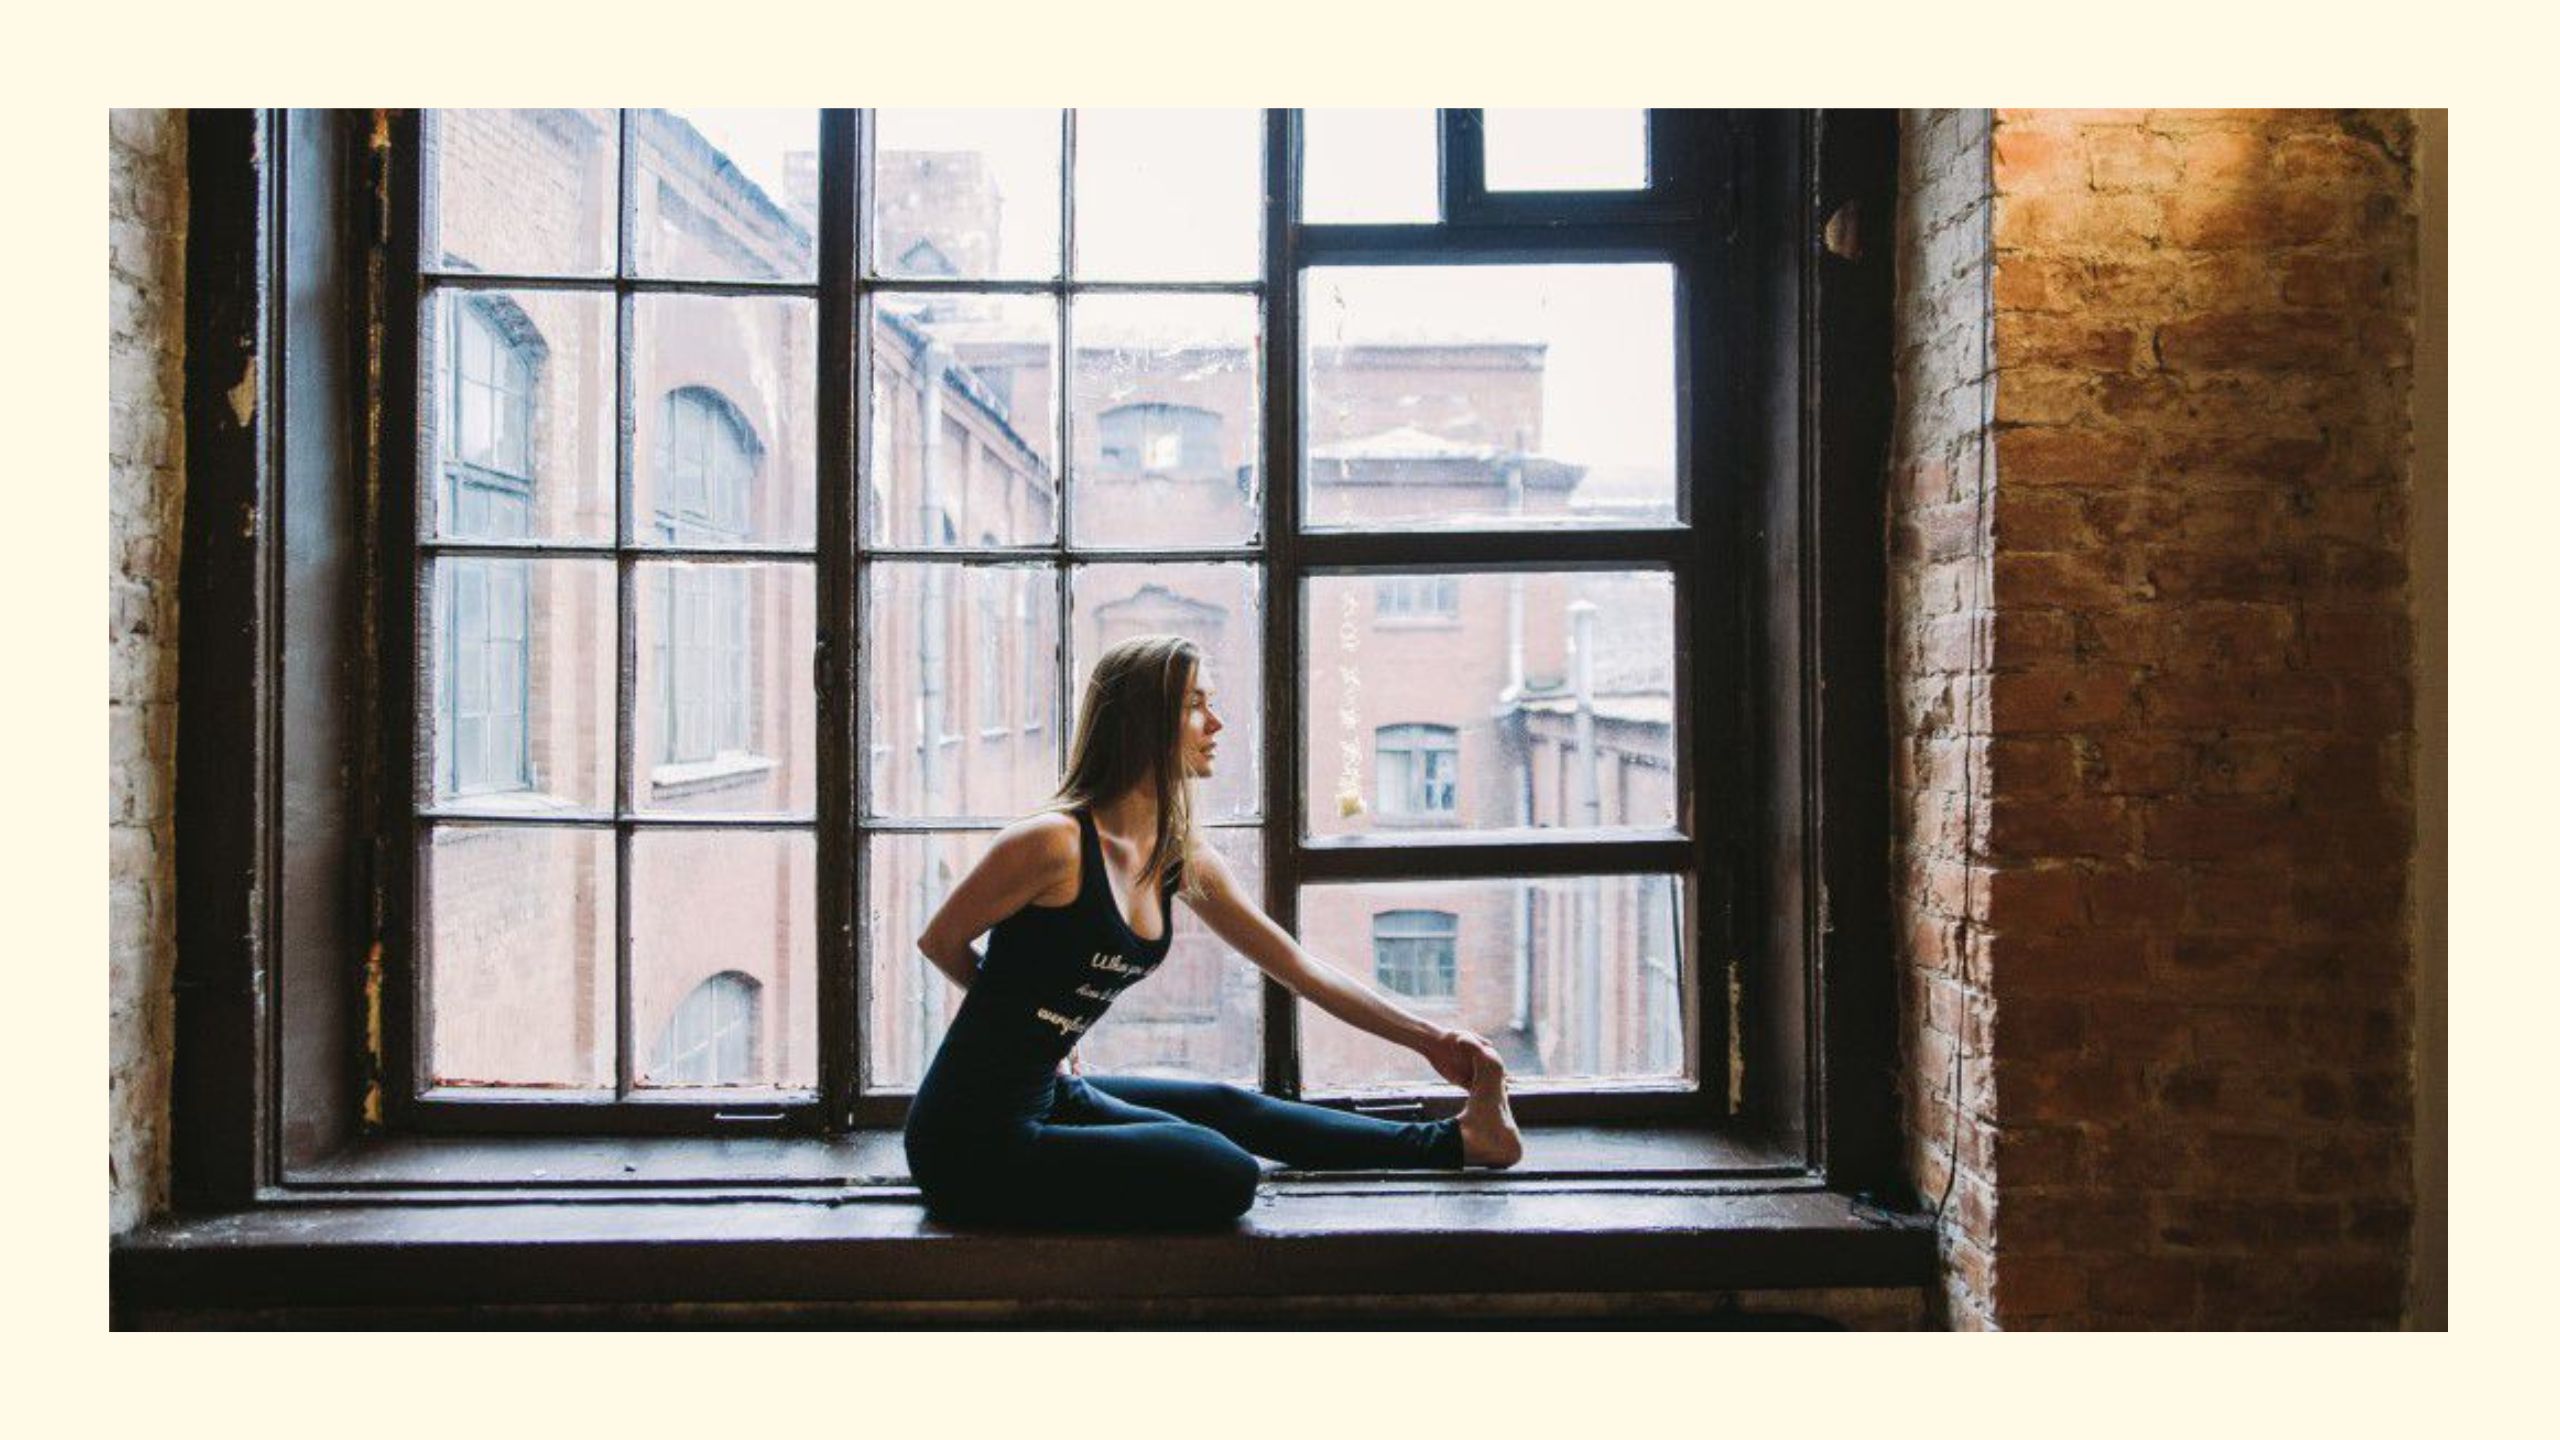 Frau in sitzender Yoga-Pose auf der Fensterbank in einem Backsteingebäude als Sinnbild für Yoga-Philosophie im Alltag